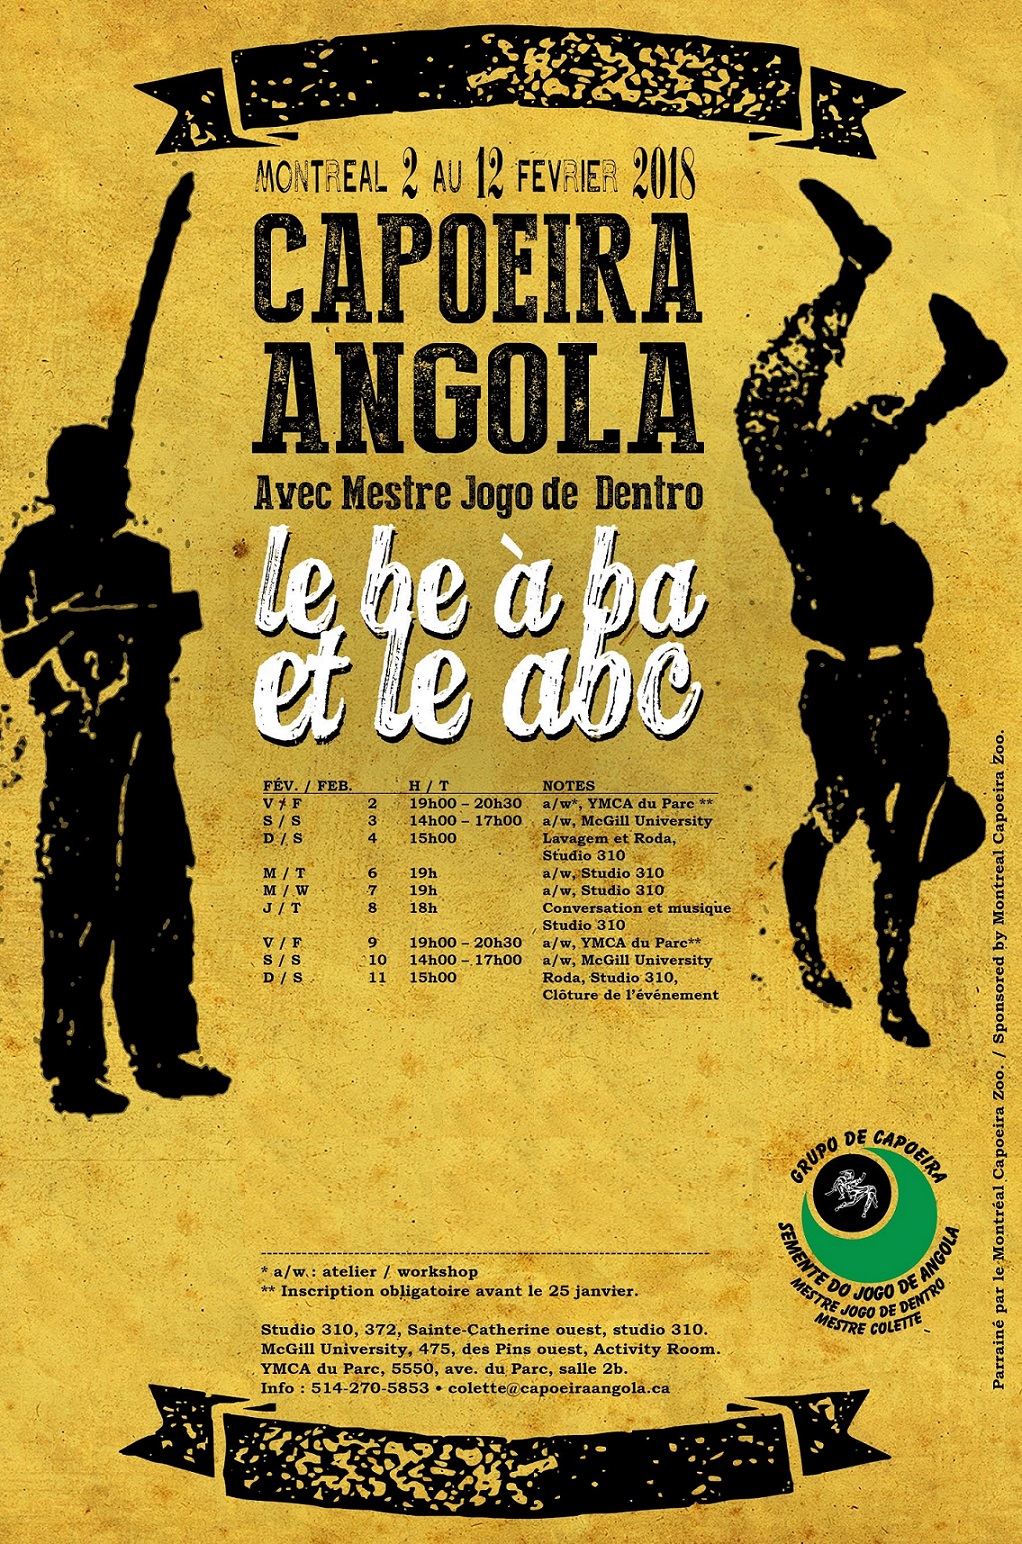 Le bé a ba et le abc de la Capoeira Angola